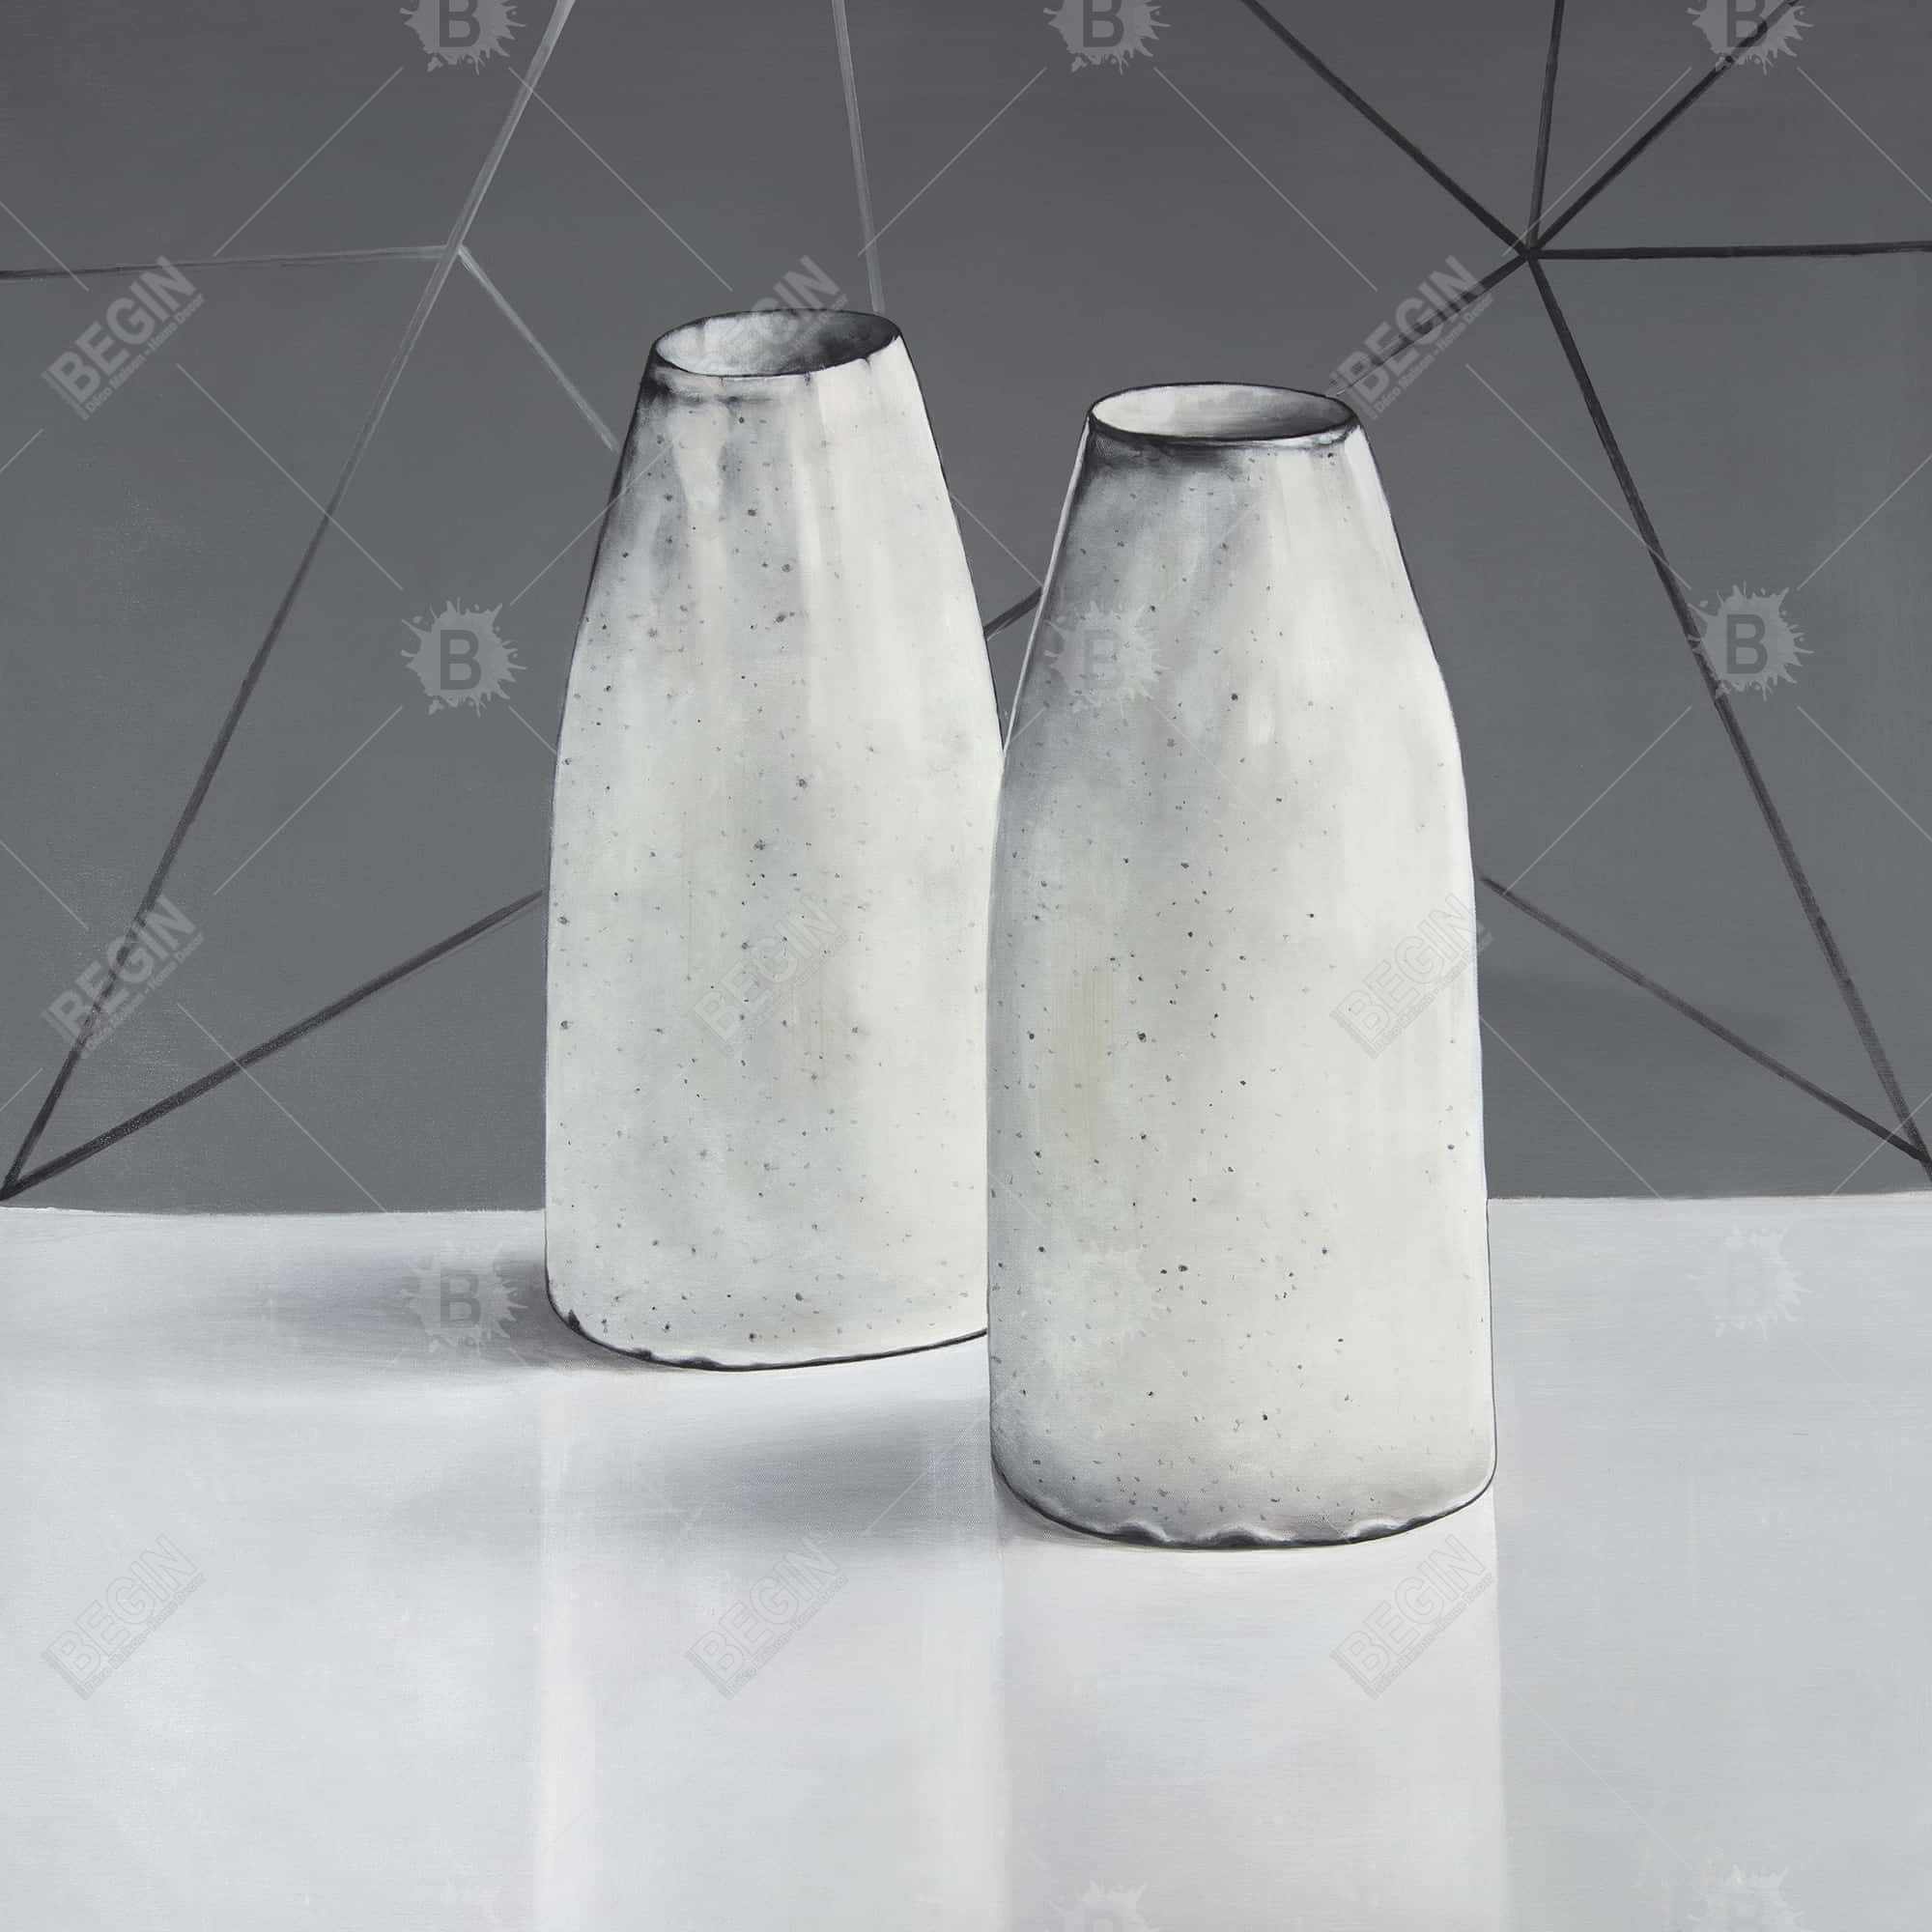 Vases